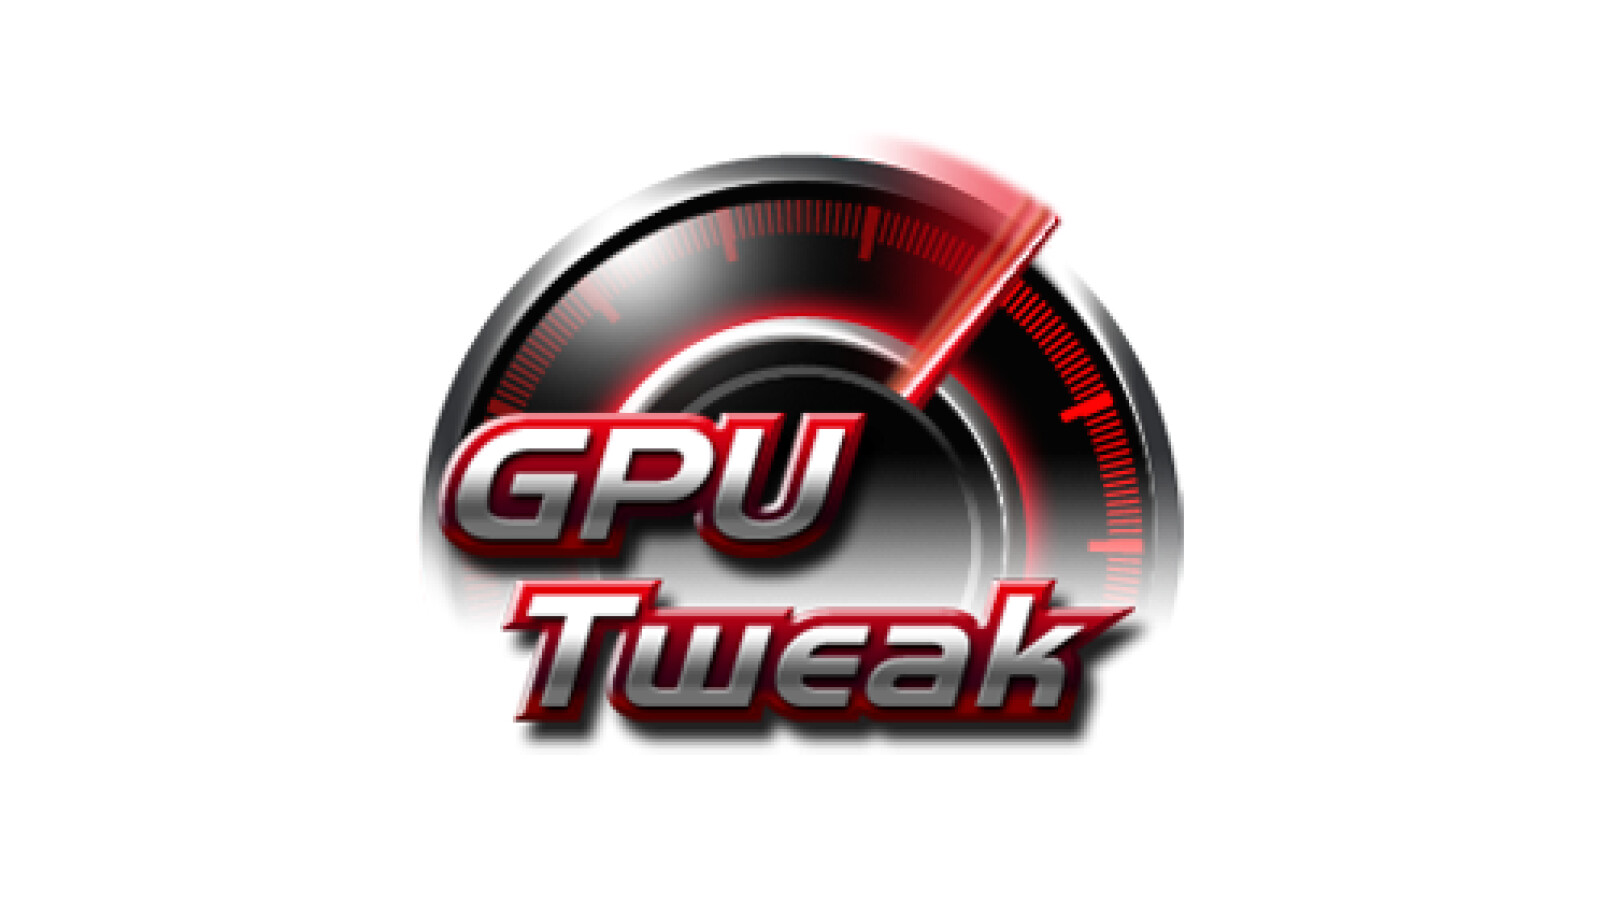 instal the last version for ipod ASUS GPU Tweak II 2.3.9.0 / III 1.6.9.4